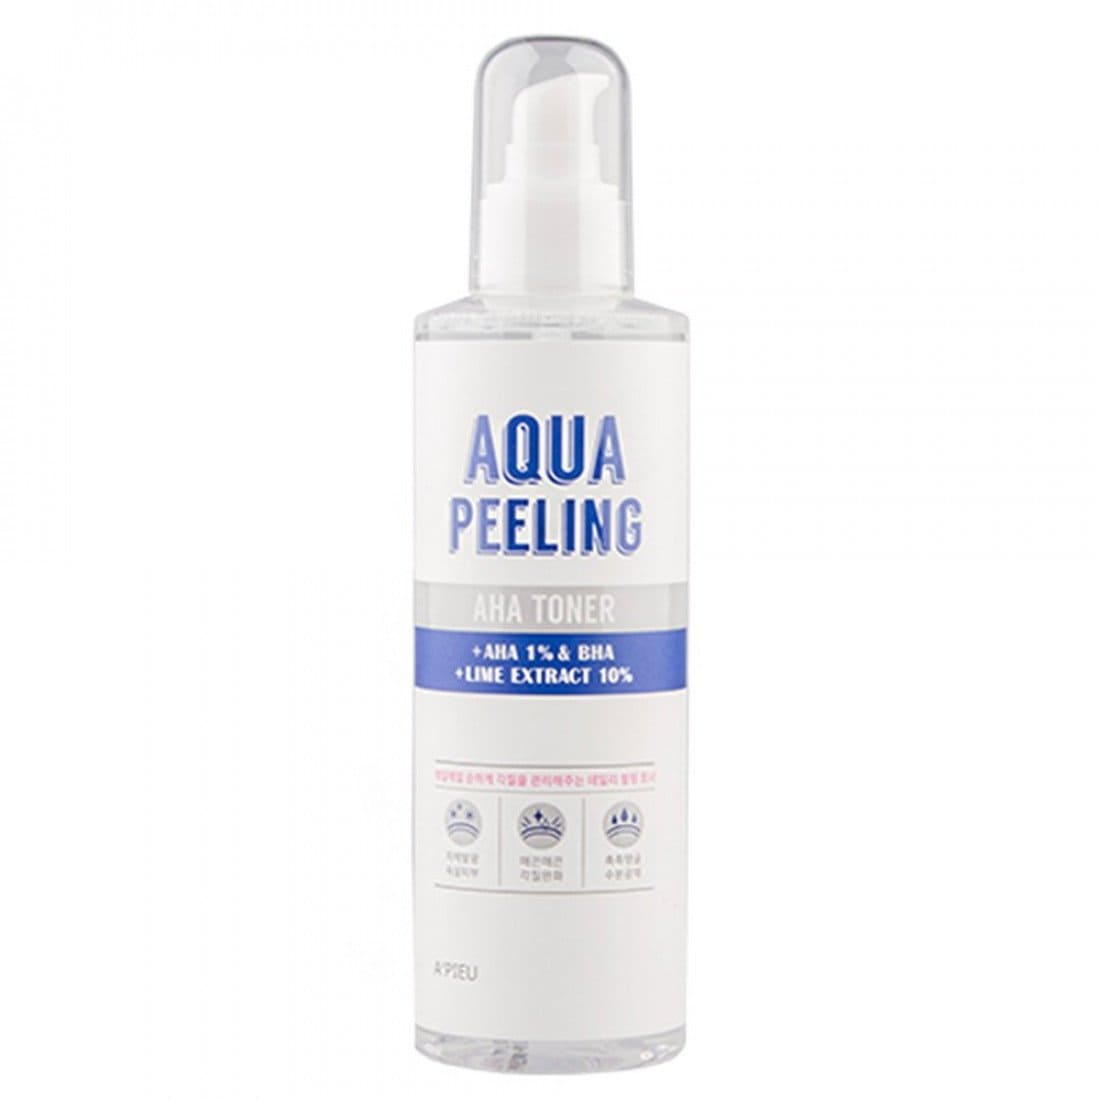 Apieu Toner regenerant Aqua Peeling AHA, 275 ml